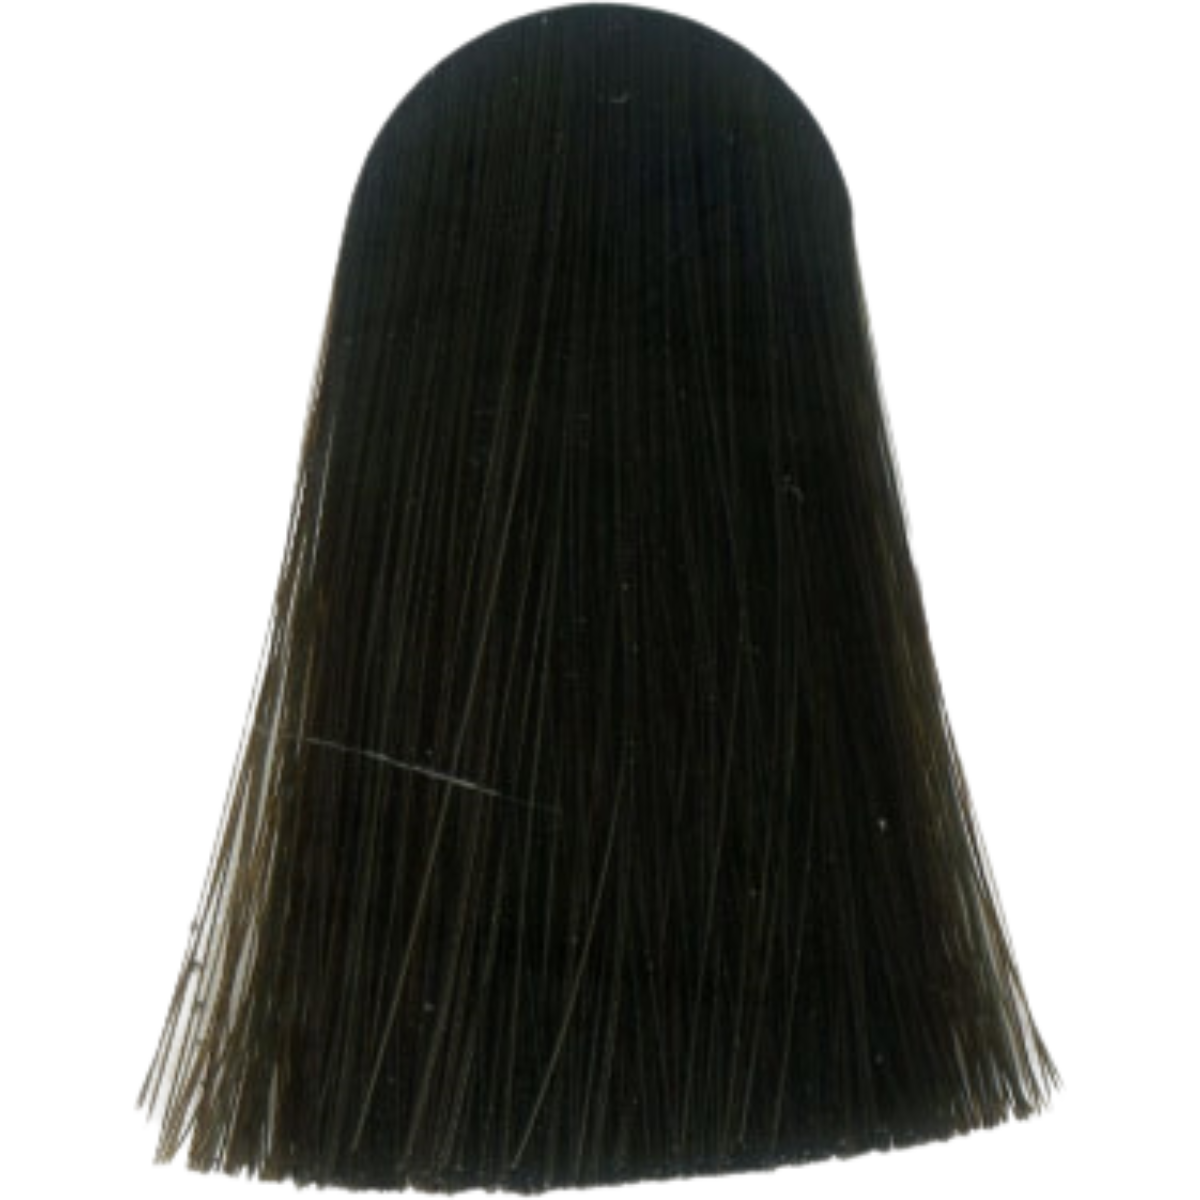 צבע שיער 4.0 MEDIUM BROWN NATURAL אינדולה INDOLA צבע בסיס לשיער 60 גרם